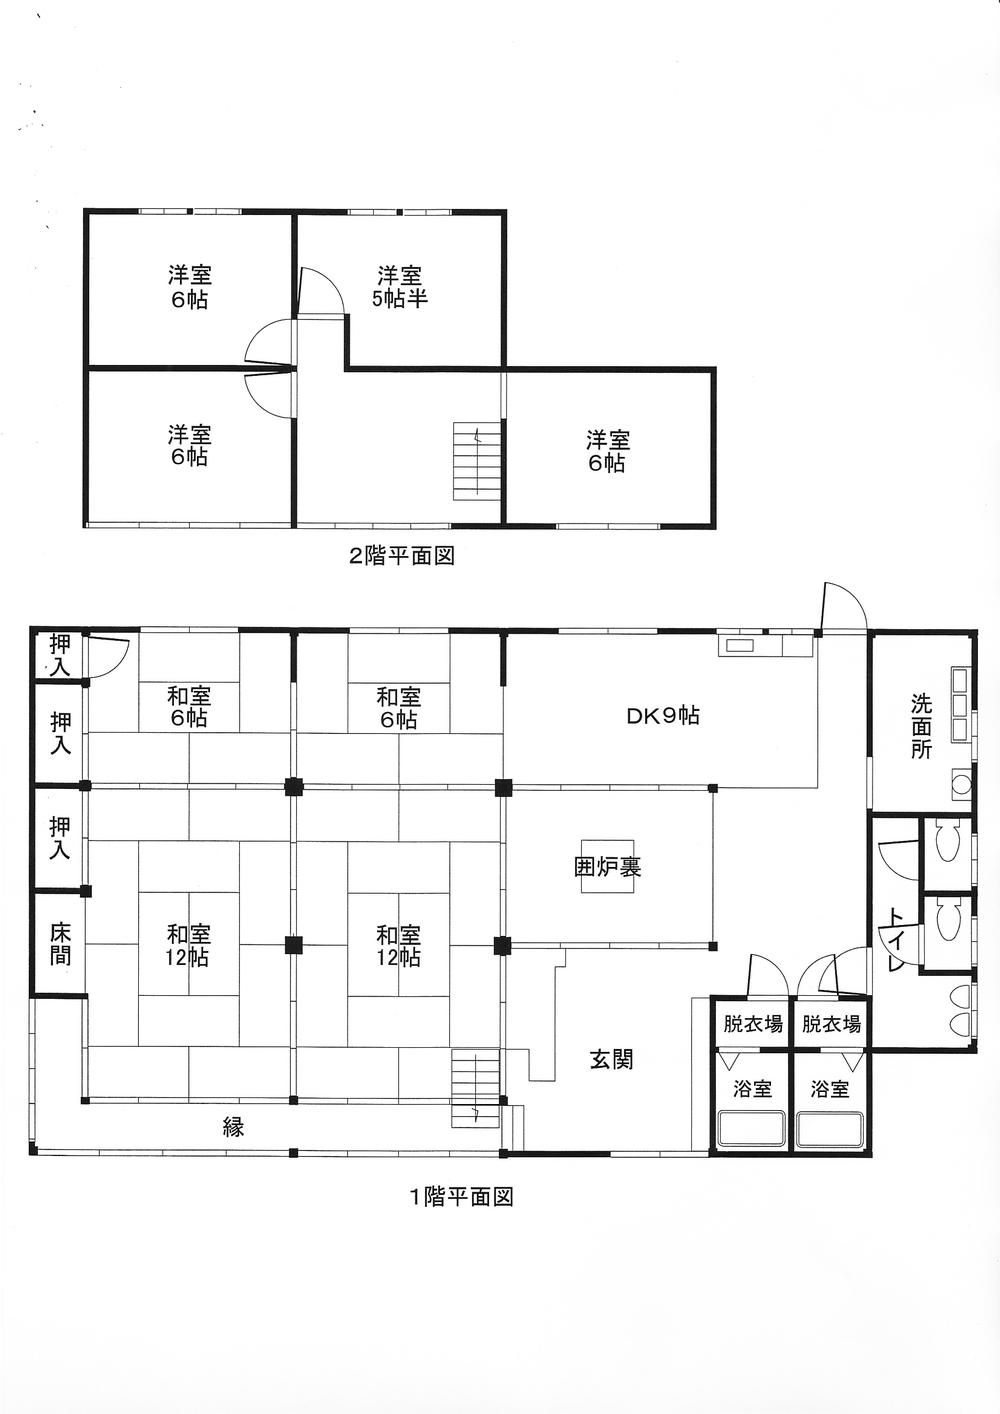 Floor plan. 14.5 million yen, 9DK, Land area 1,106.15 sq m , Building area 212.99 sq m